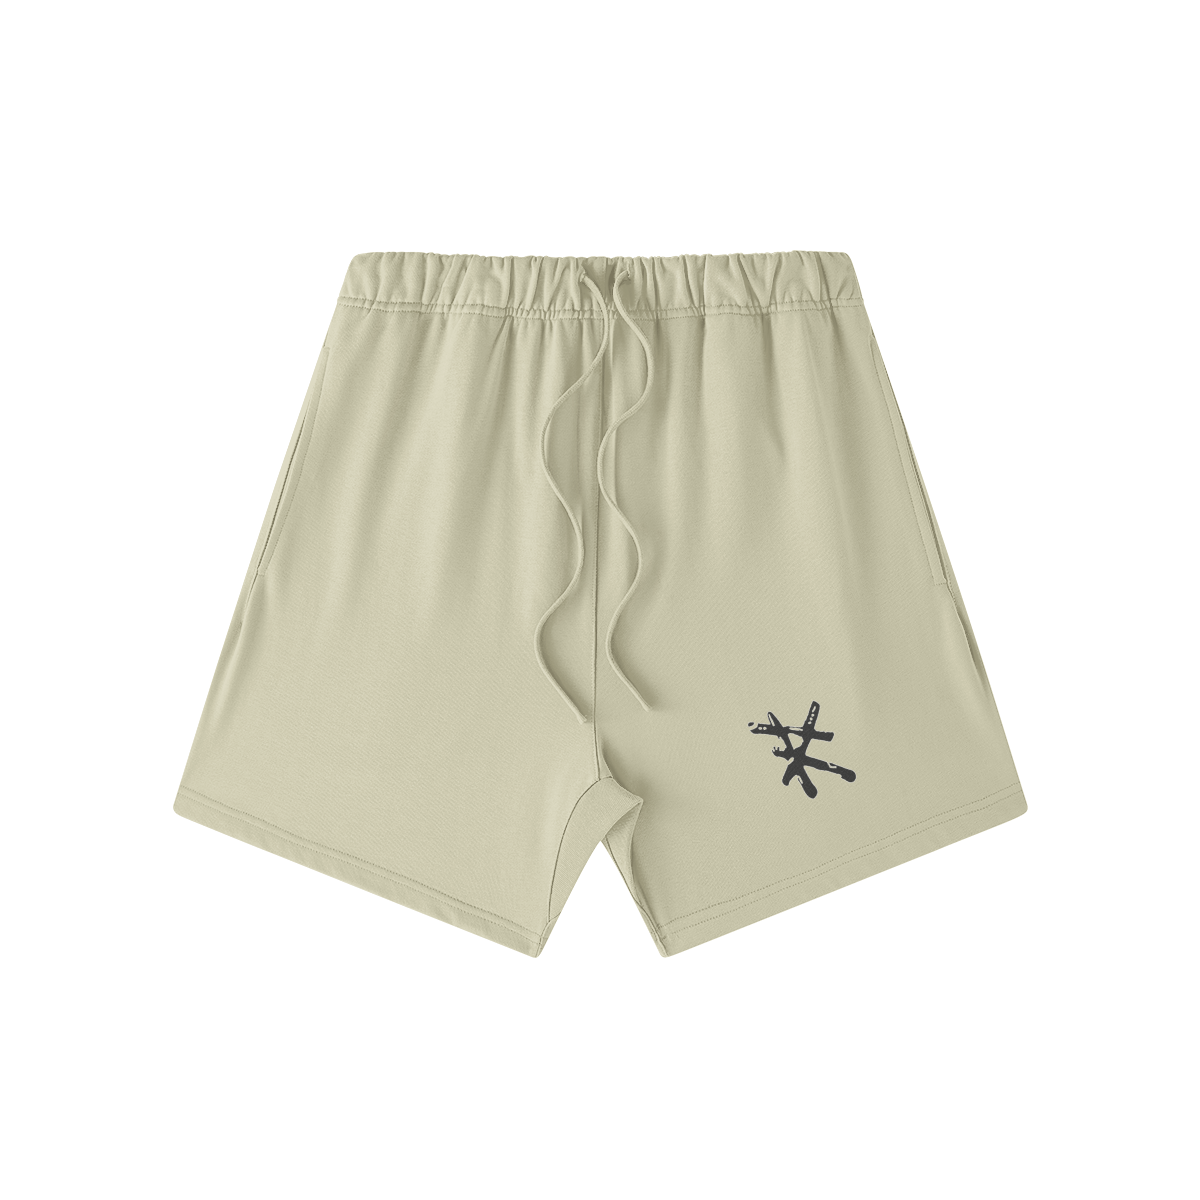 RARILETO Unisex Oversized Sweat Shorts - Rarileto